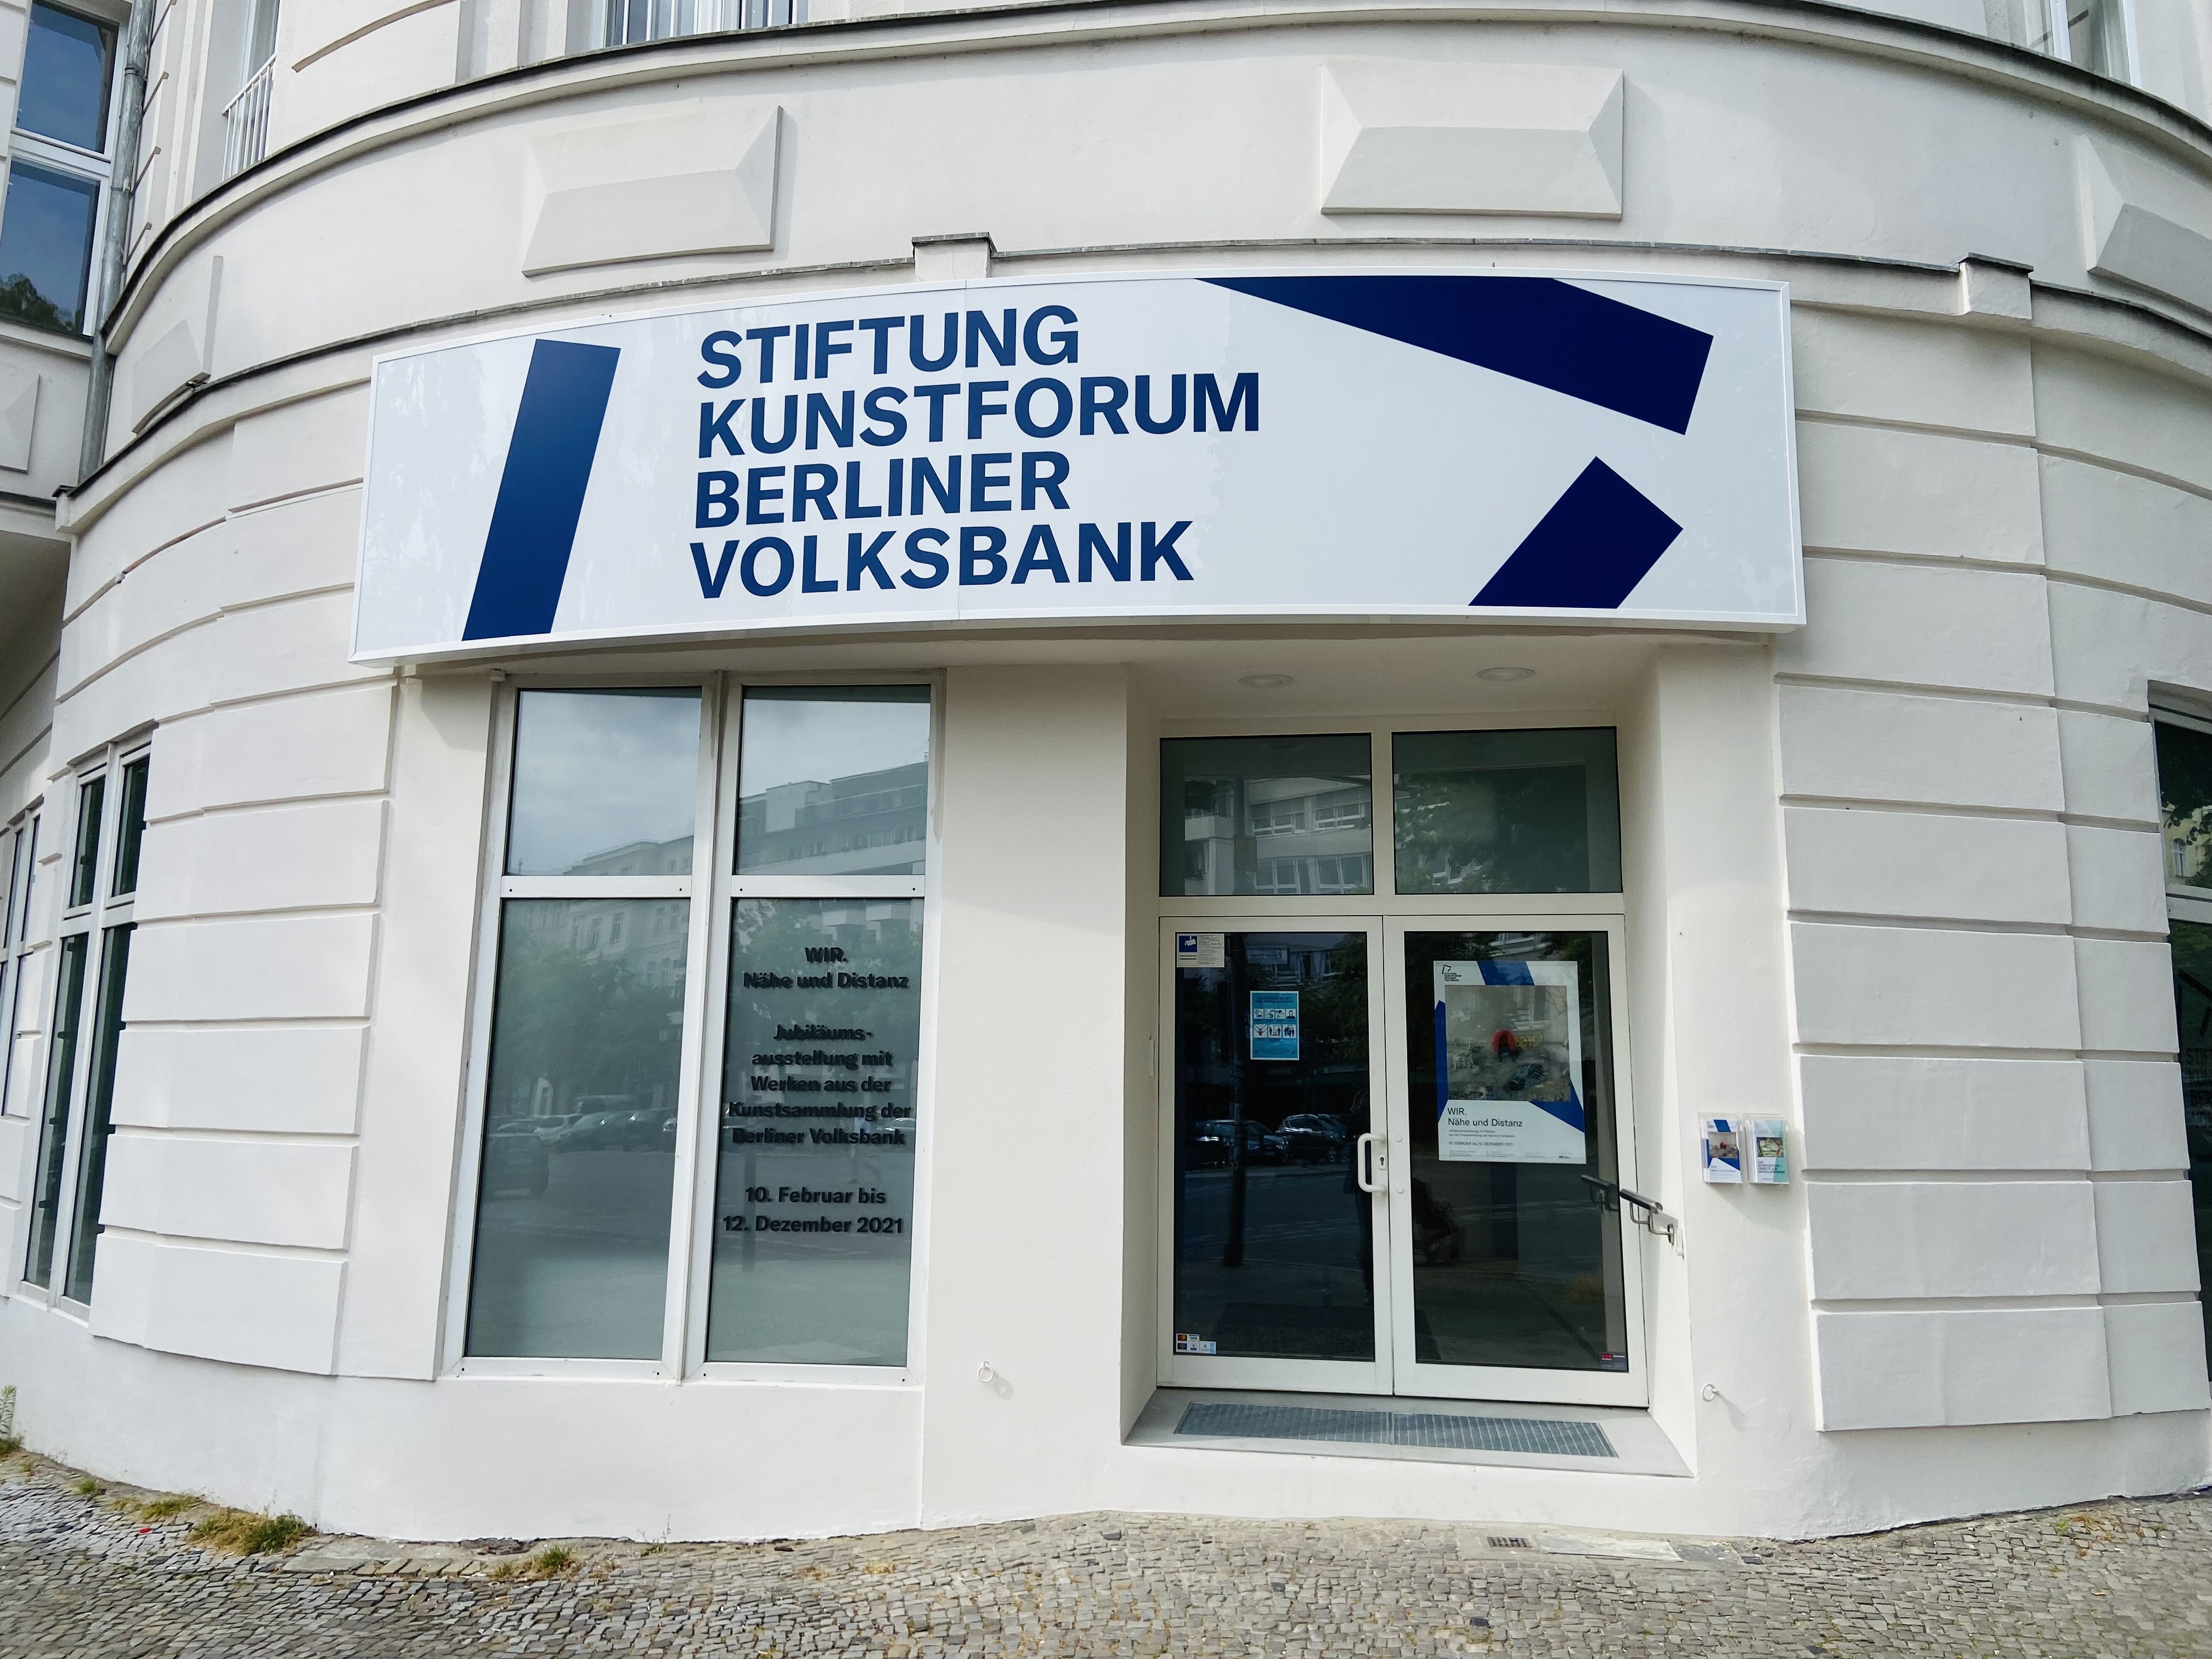 Stiftung Kunstforum Berliner Volksbank